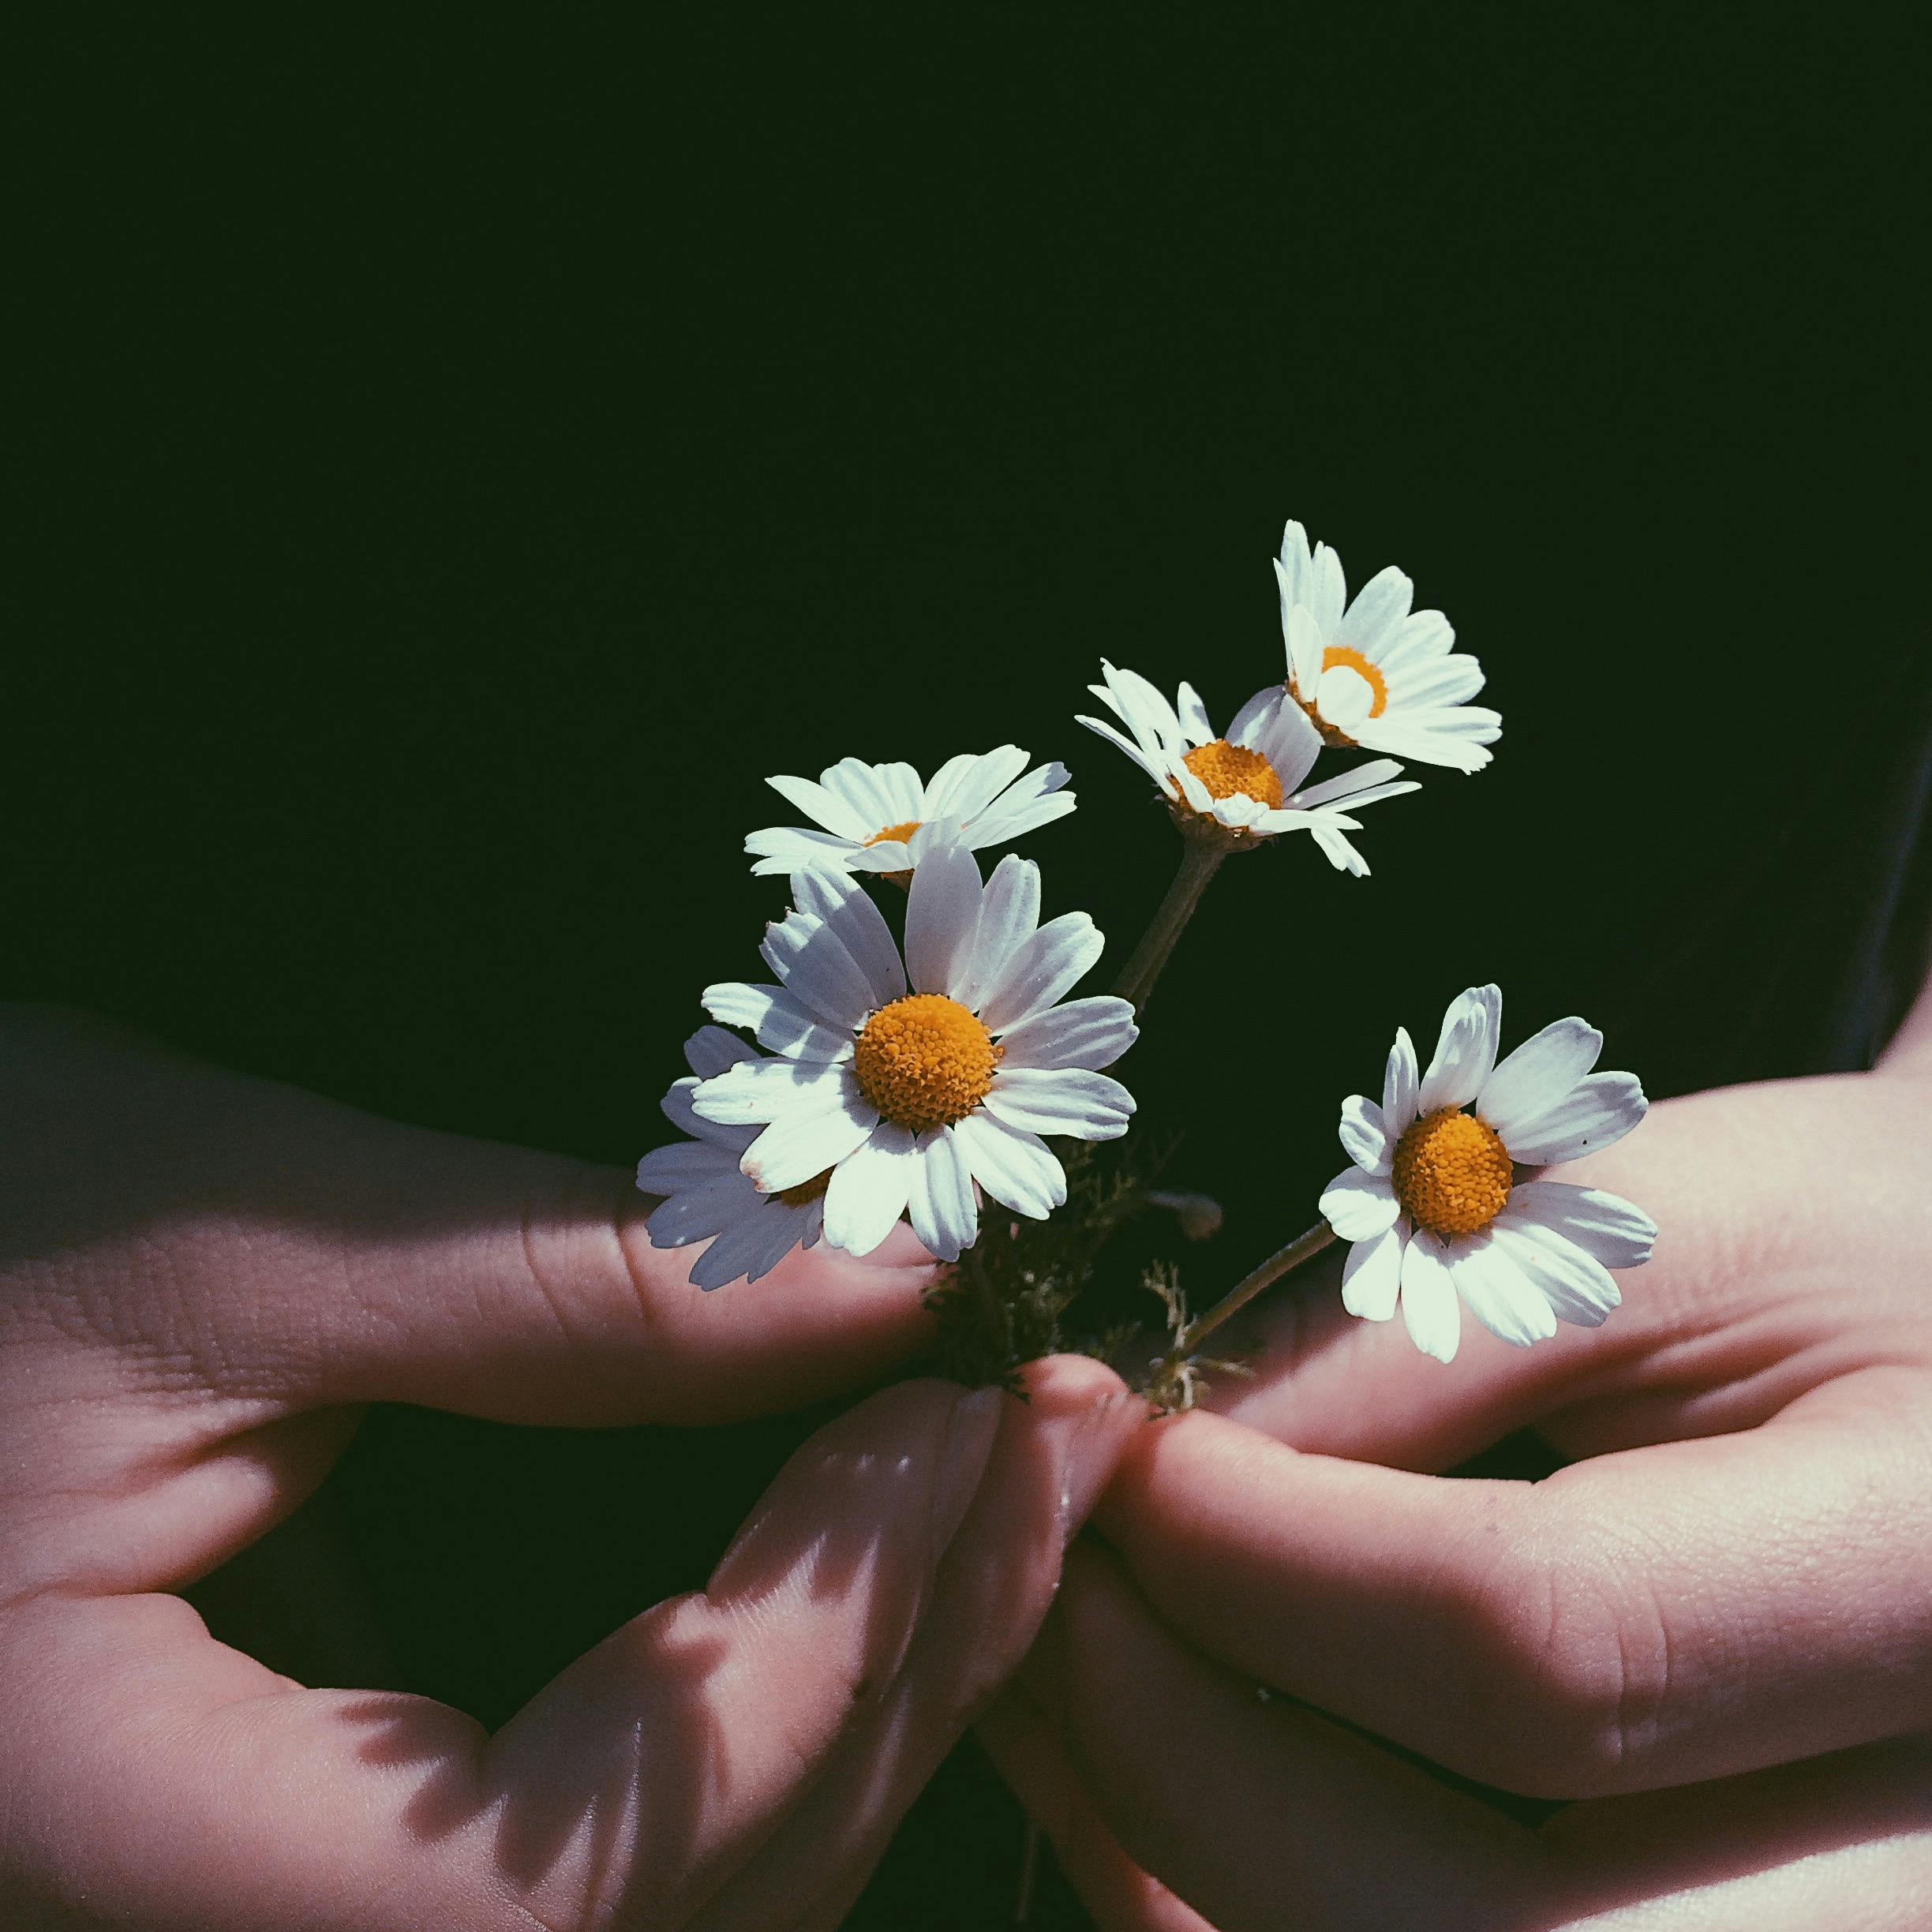 カモミールの花を持っている人のクローズアップ写真 無料の写真素材